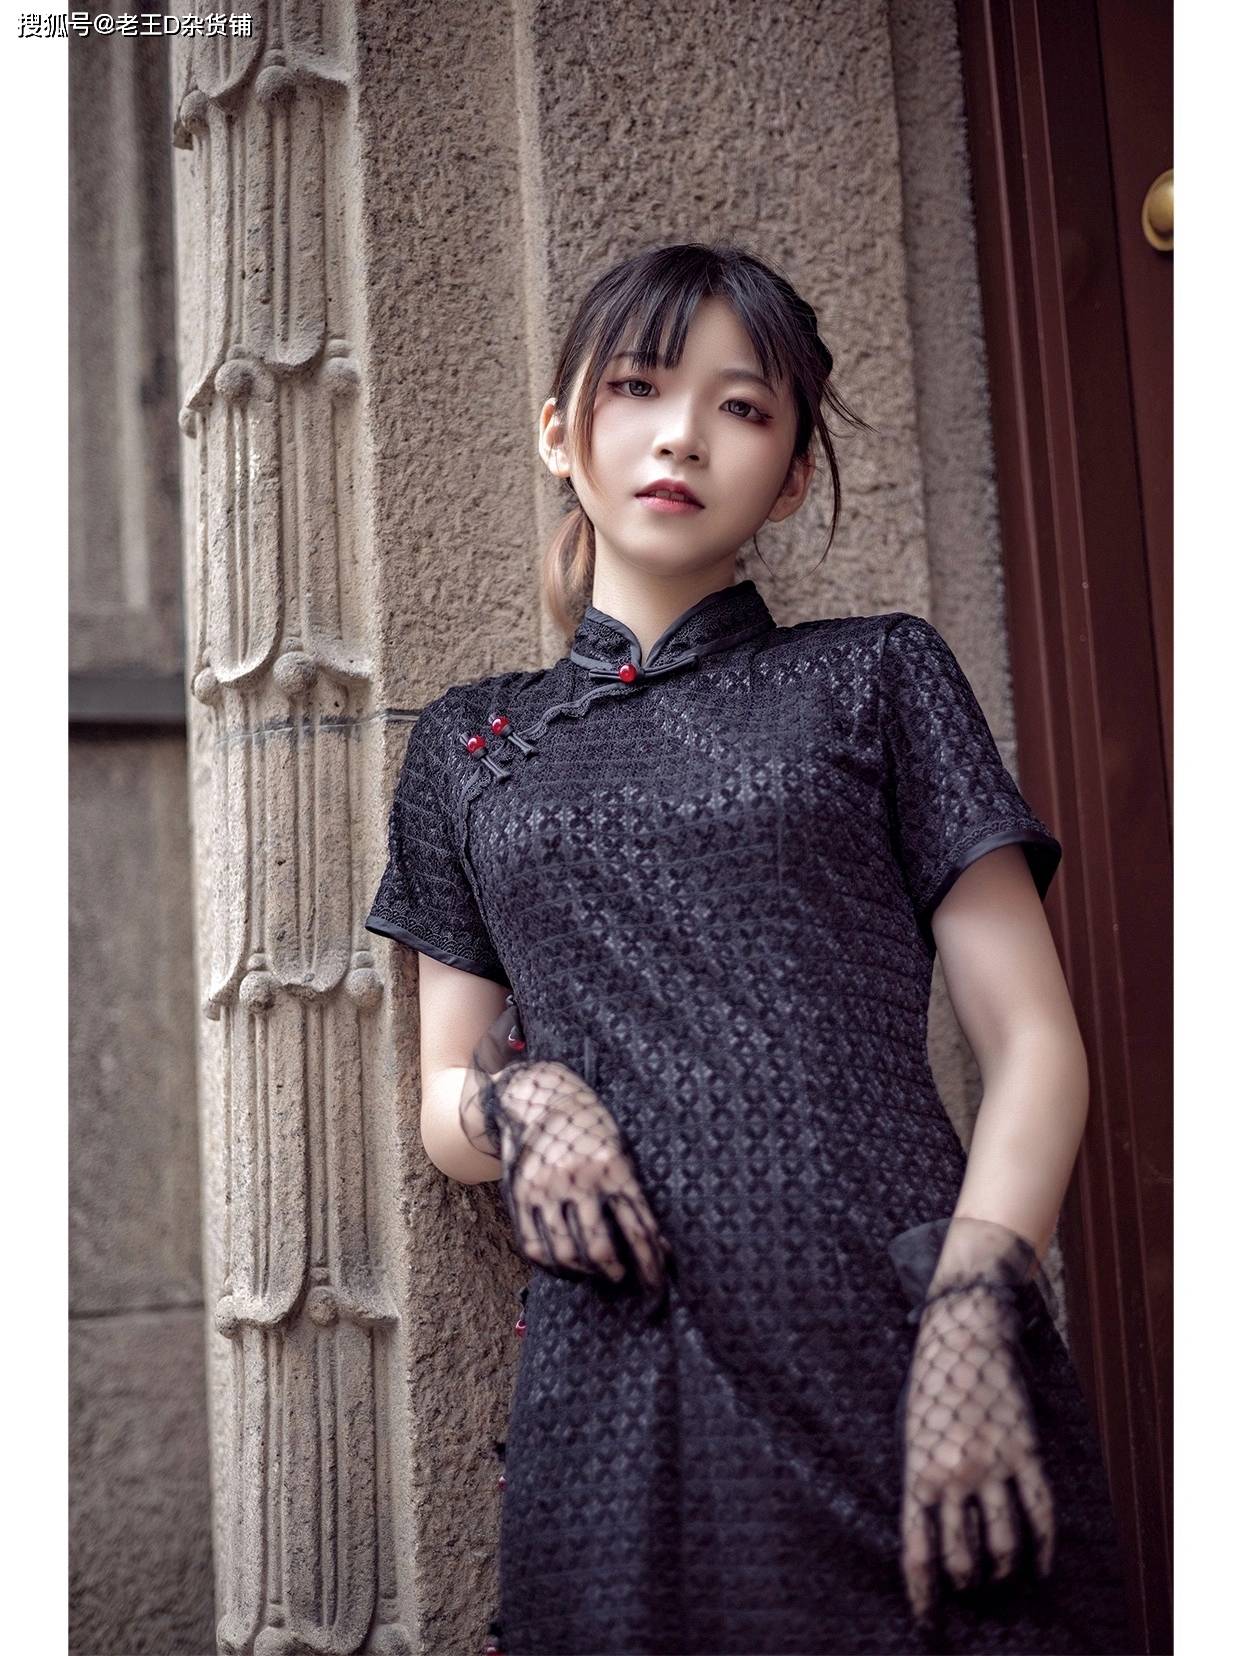 上海旗袍丨有没有一种民国上海大小姐的感觉?